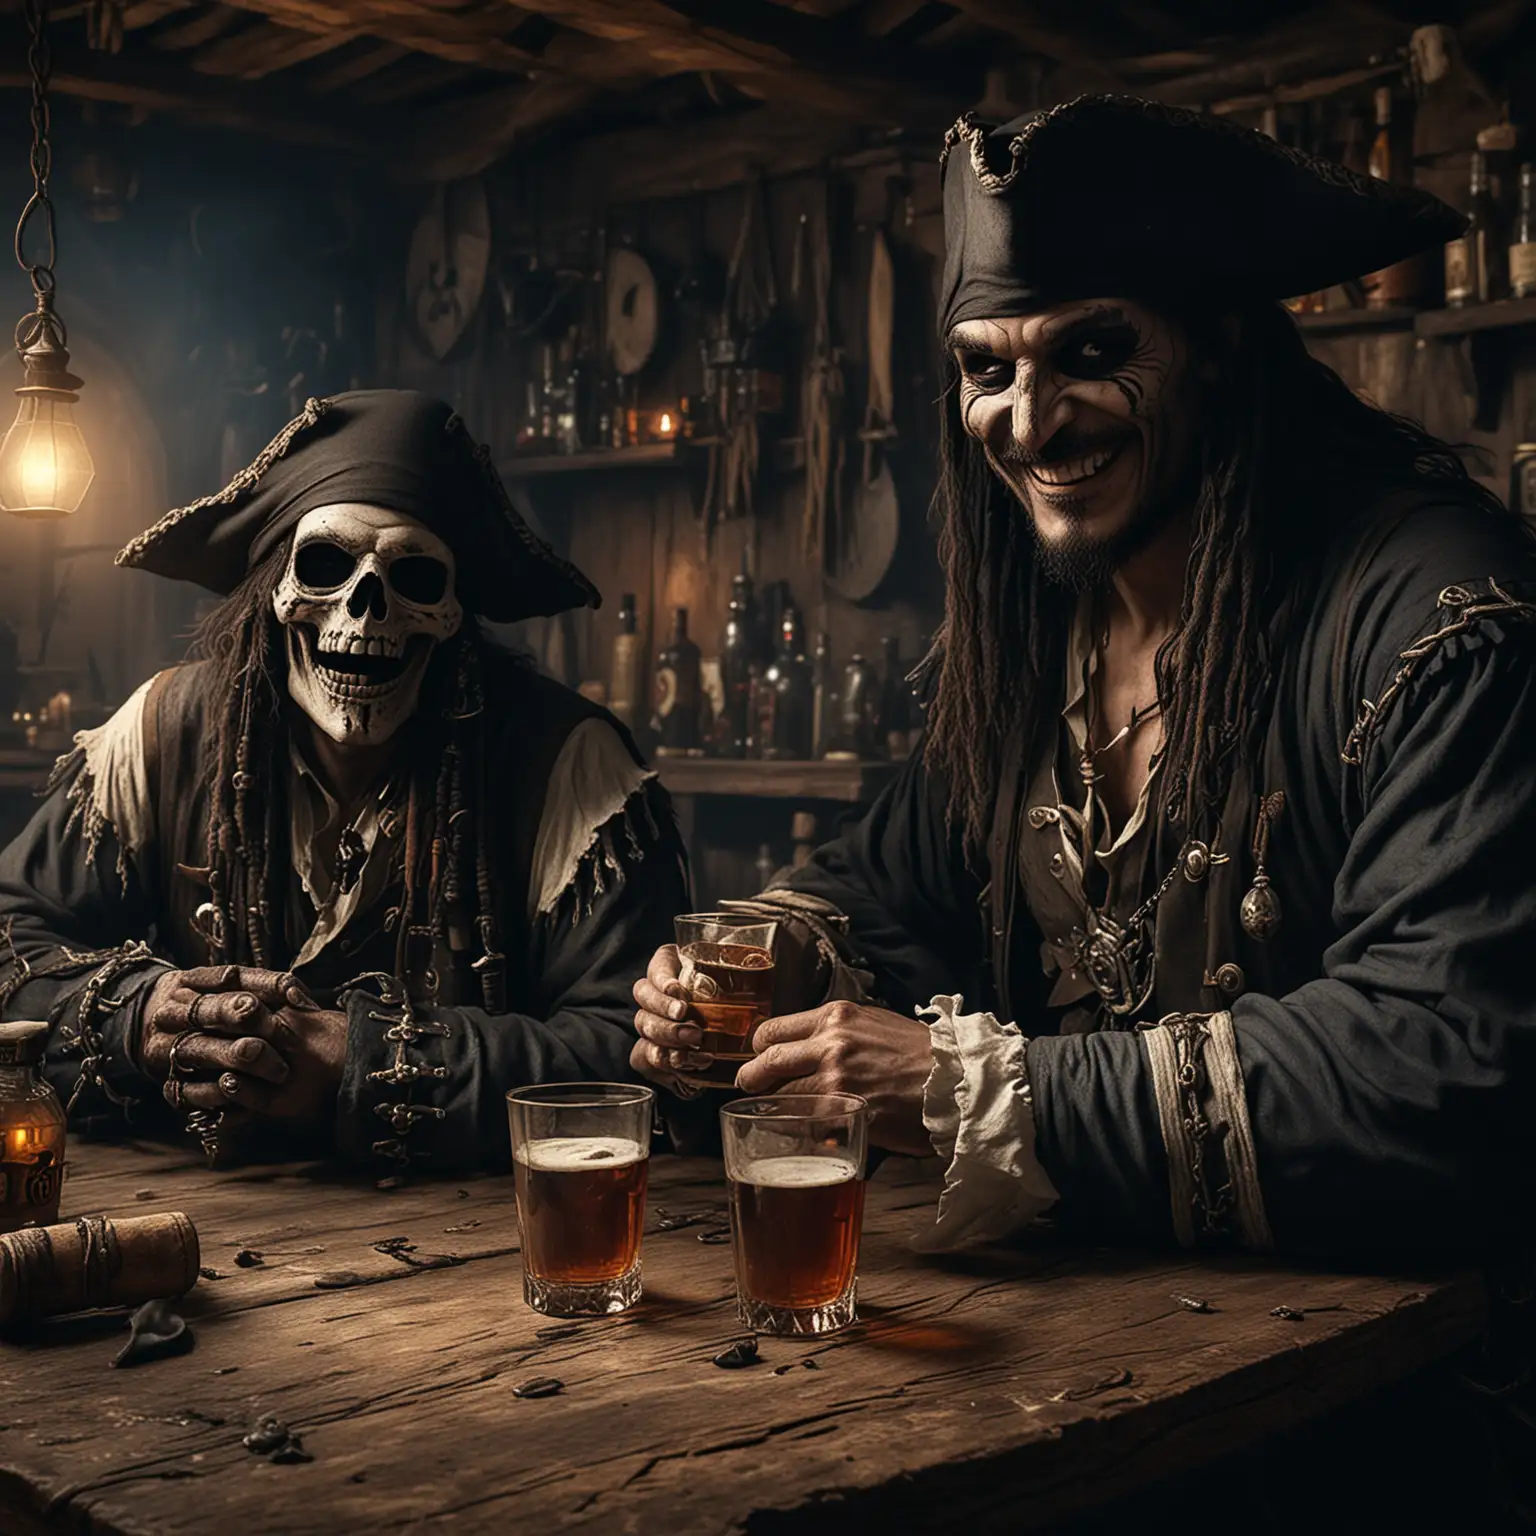 Mittelalterliche Taverne. Dunkel. 
Ein Pirat schaut freundlich. 

Neben ihm sitzt der Sensenmann. 

Beide trinken Rum.

Der Pirat lächelt.

Mehr Rum.


